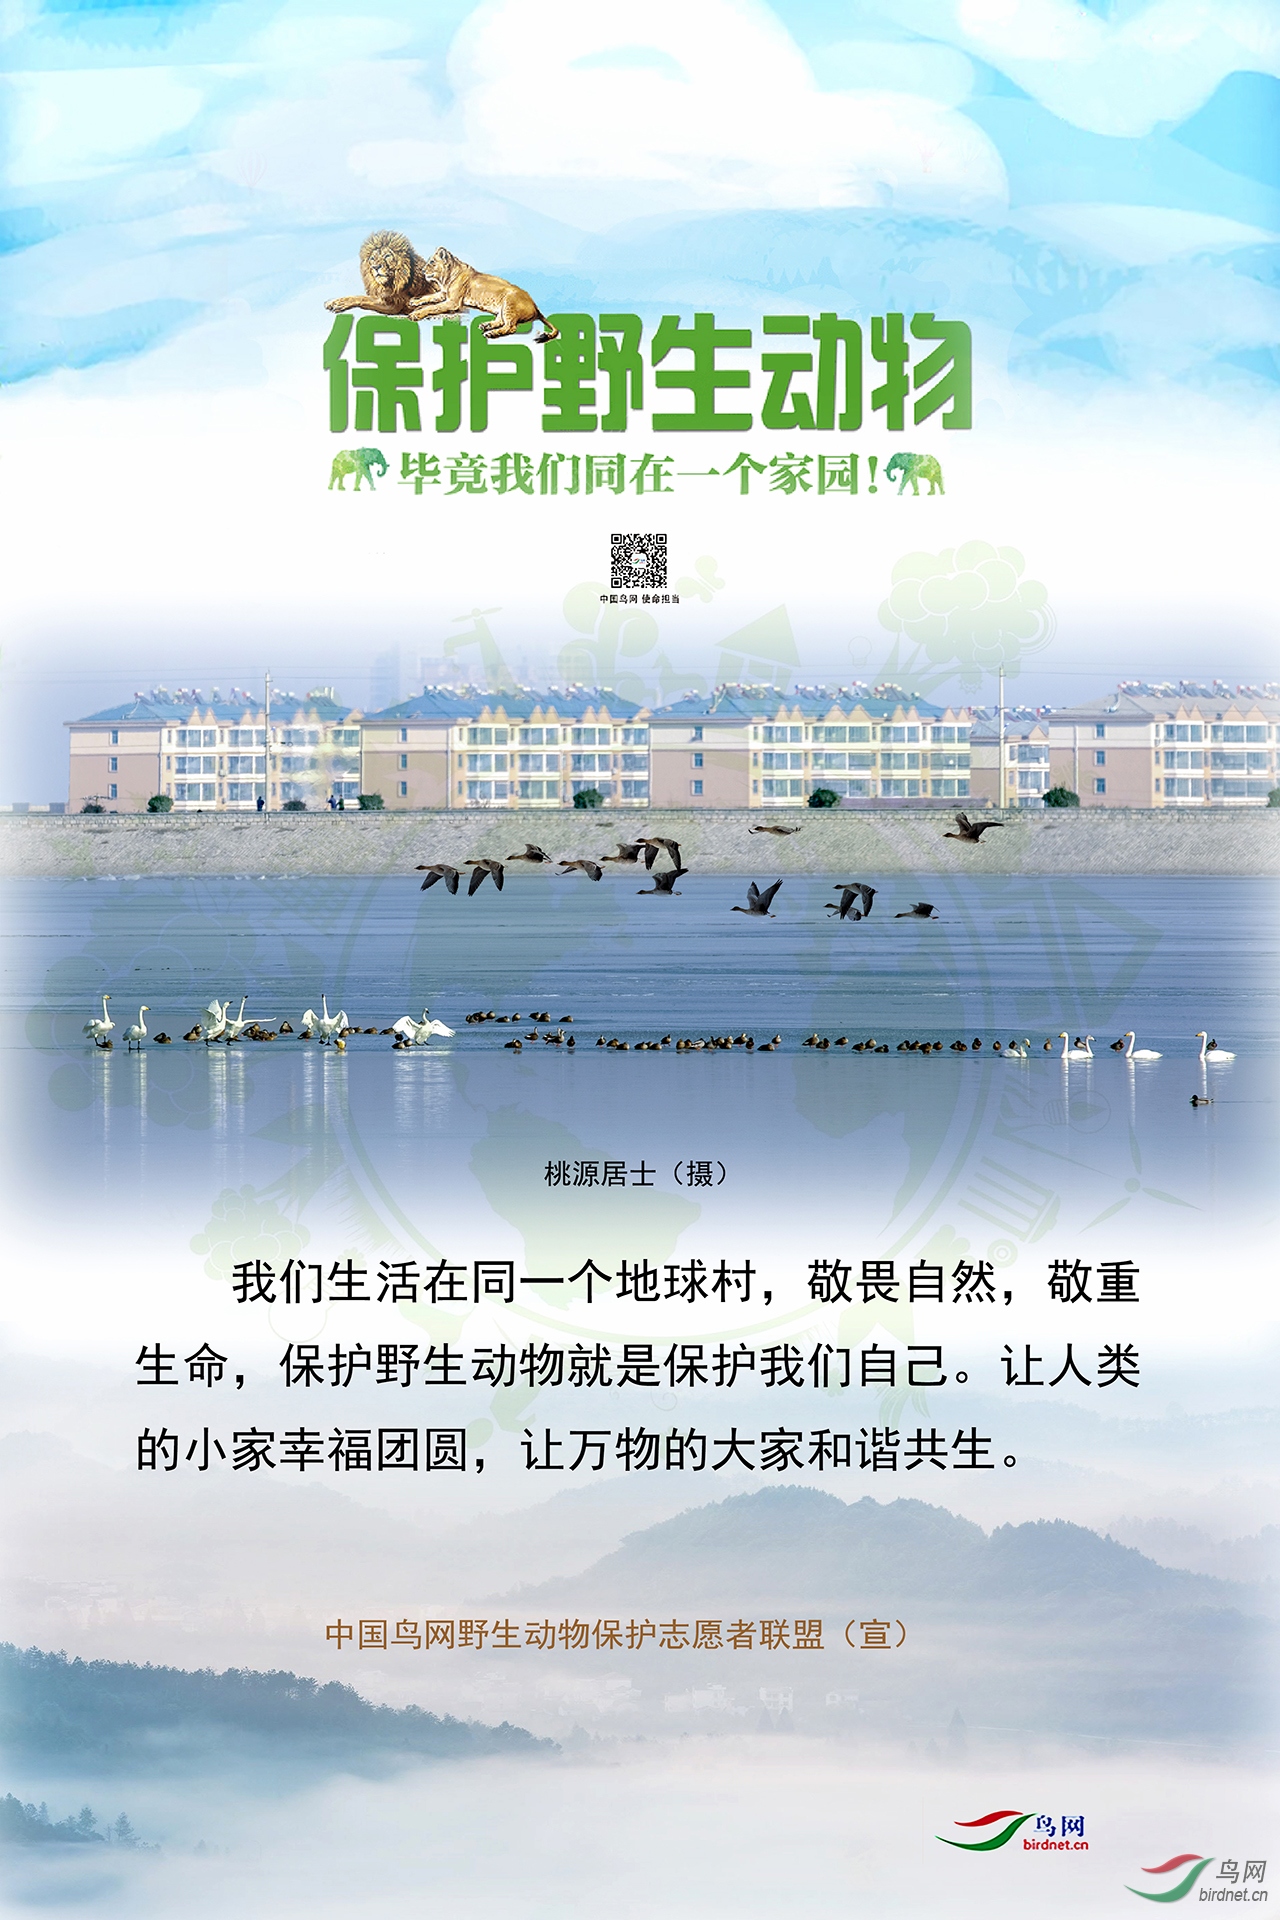 桃源居士鸟网保护野生动物宣传海报（1）.jpg